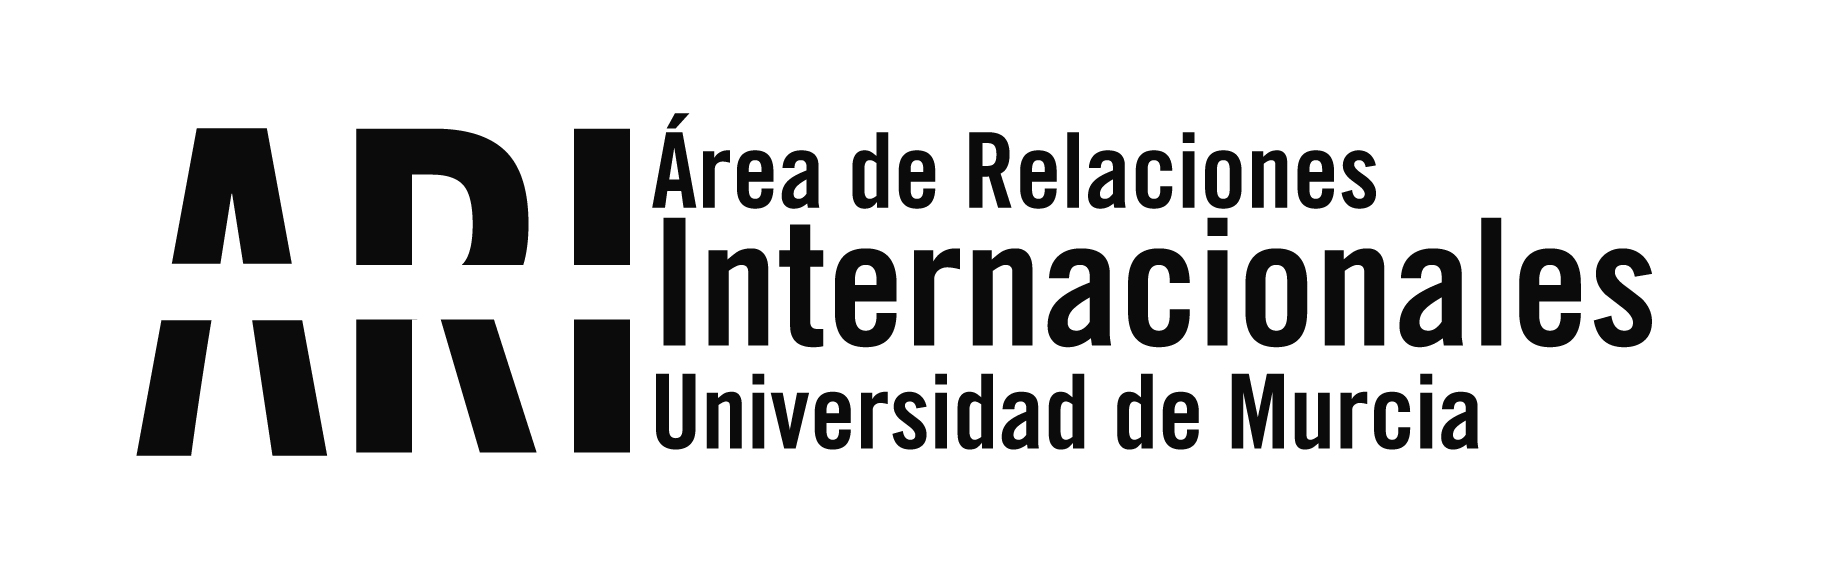 La Universidad de Murcia asiste a las Jornadas Anuales de Difusión e Información Erasmus+ 2019 de la SEPIE en Madrid - Área de Relaciones Internacionales